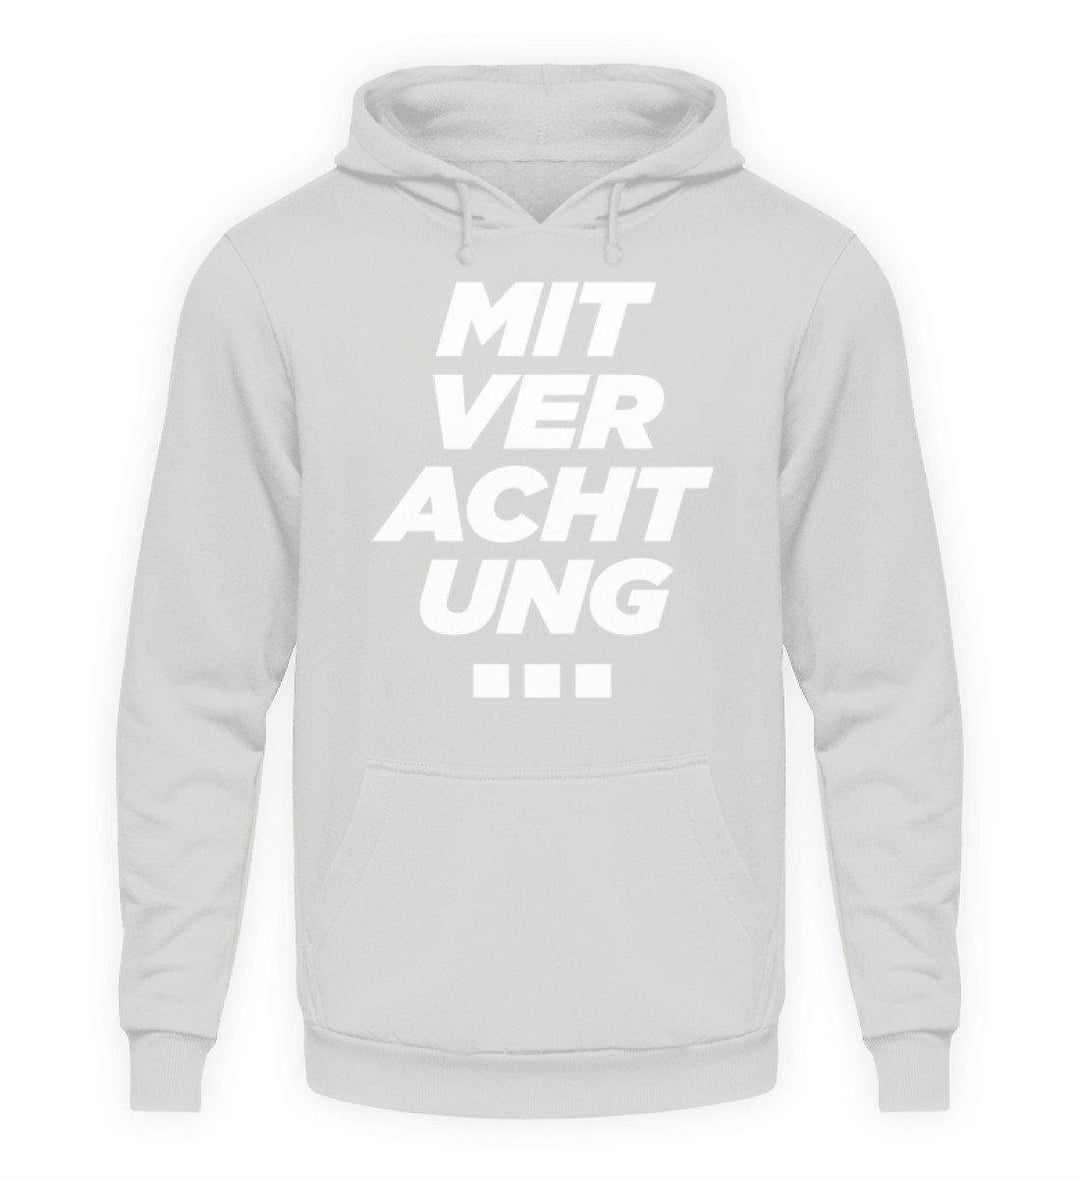 Mit Verachtung...  - Unisex Kapuzenpullover Hoodie - Words on Shirts